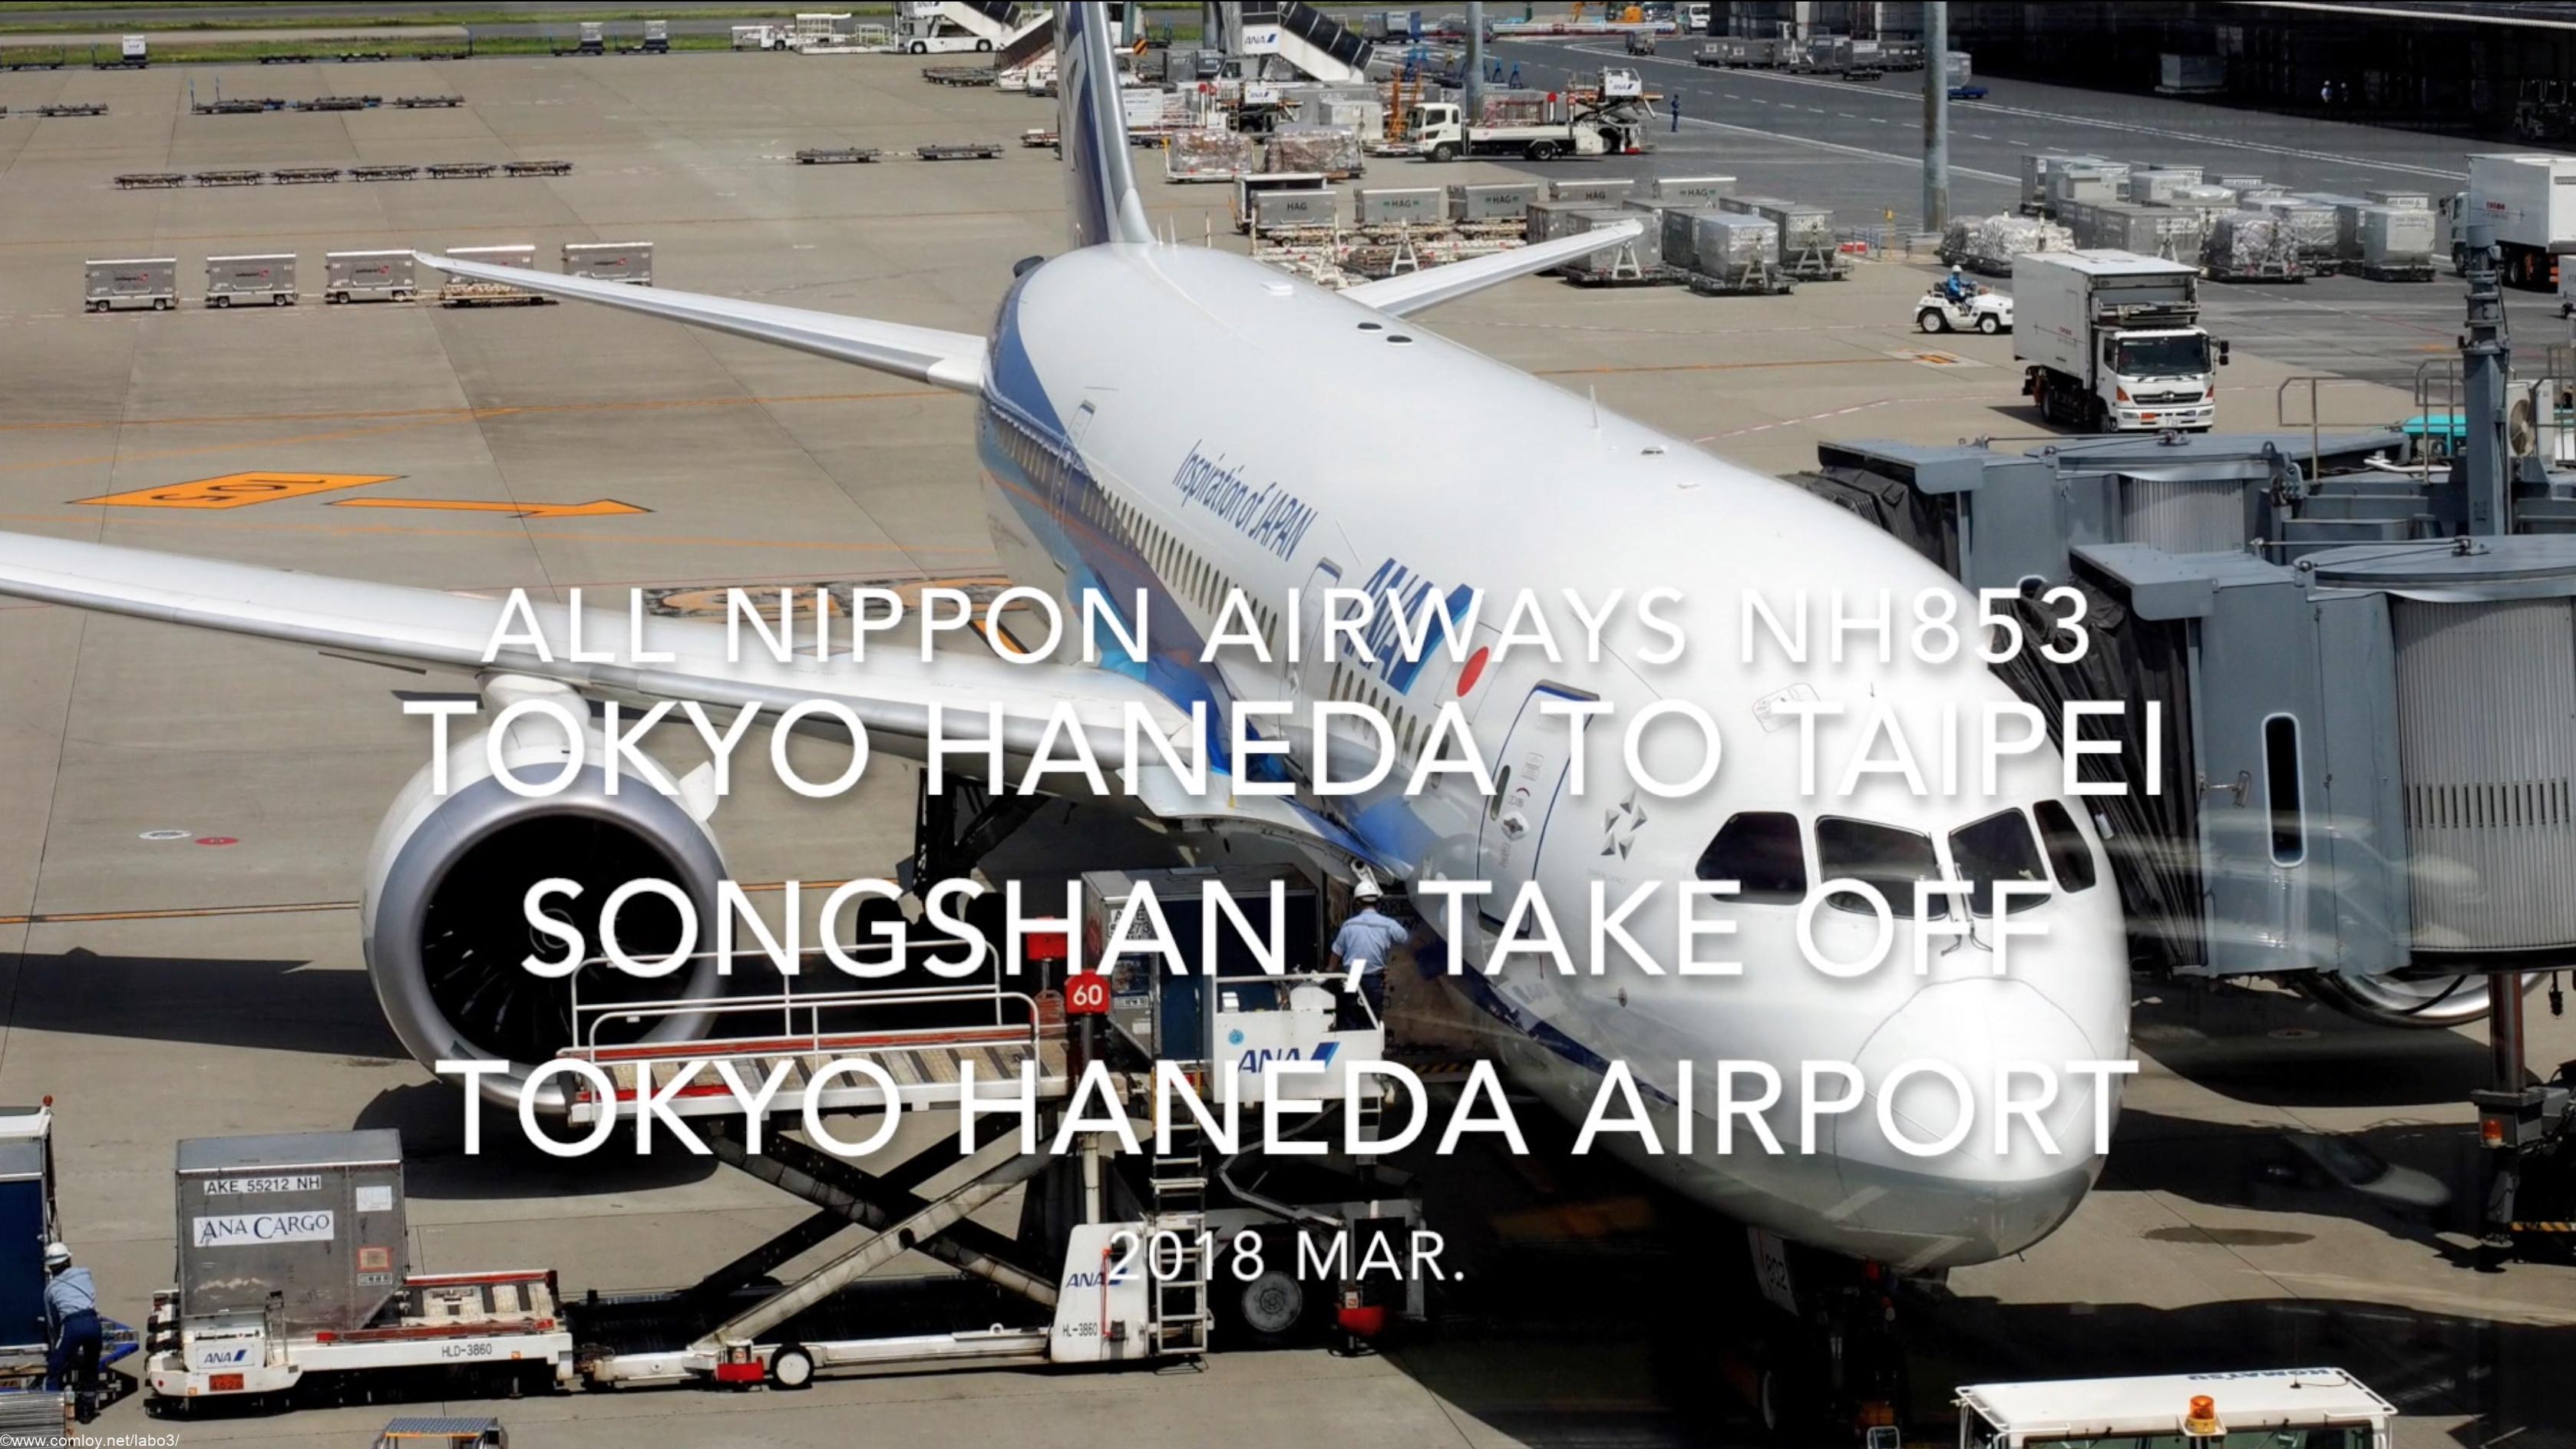 【機内から離着陸映像】2018 Mar All Nippon Airways NH853 TOKYO HANEDA to Taipei Songshan , Take off Tokyo HANEDA airport